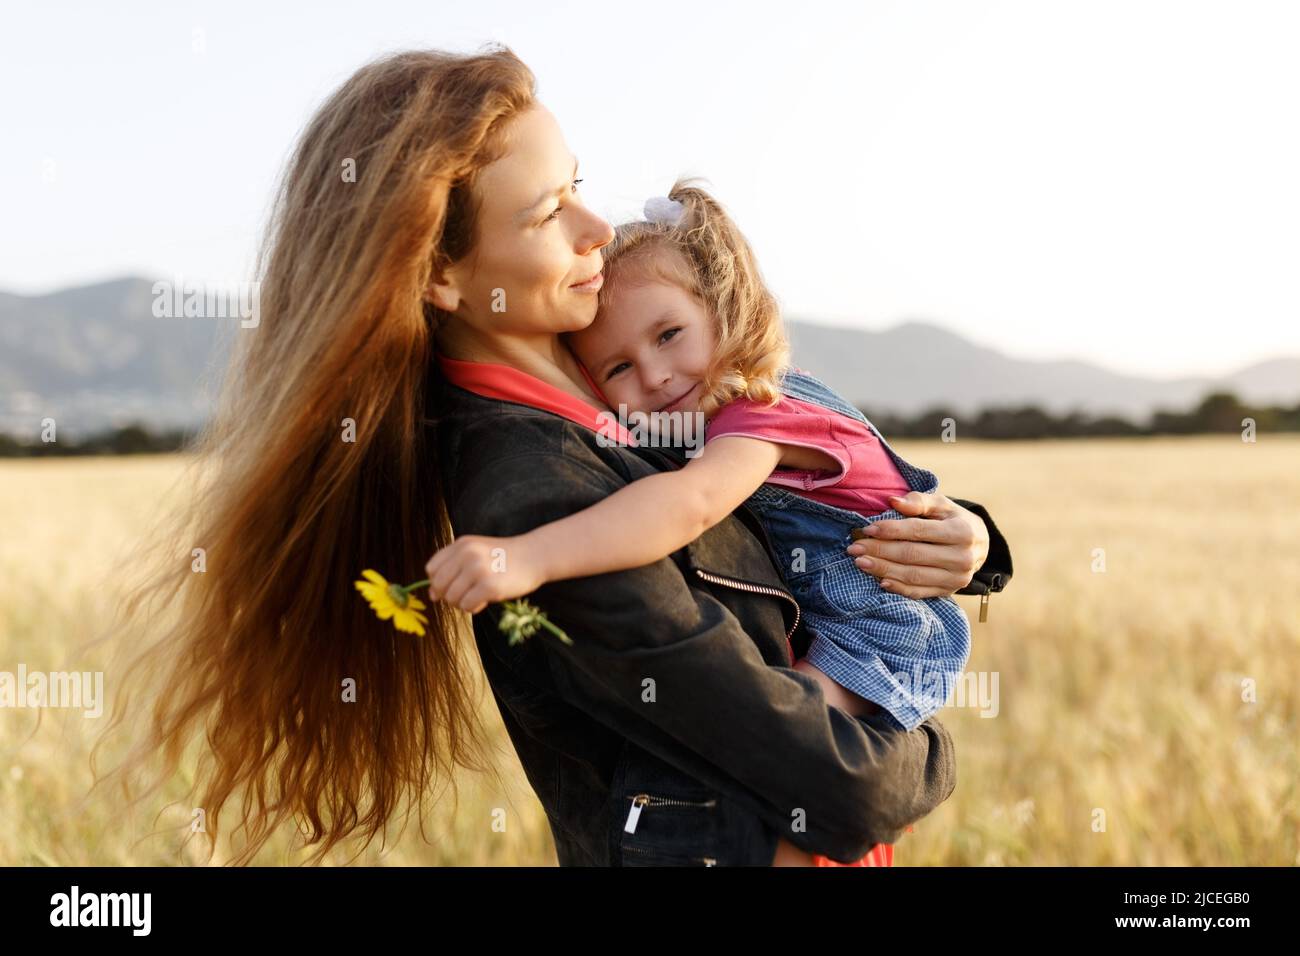 Portrait d'une jeune mère heureuse et de sa belle fille jouant et riant dans un champ de blé . Concept de liberté. Banque D'Images